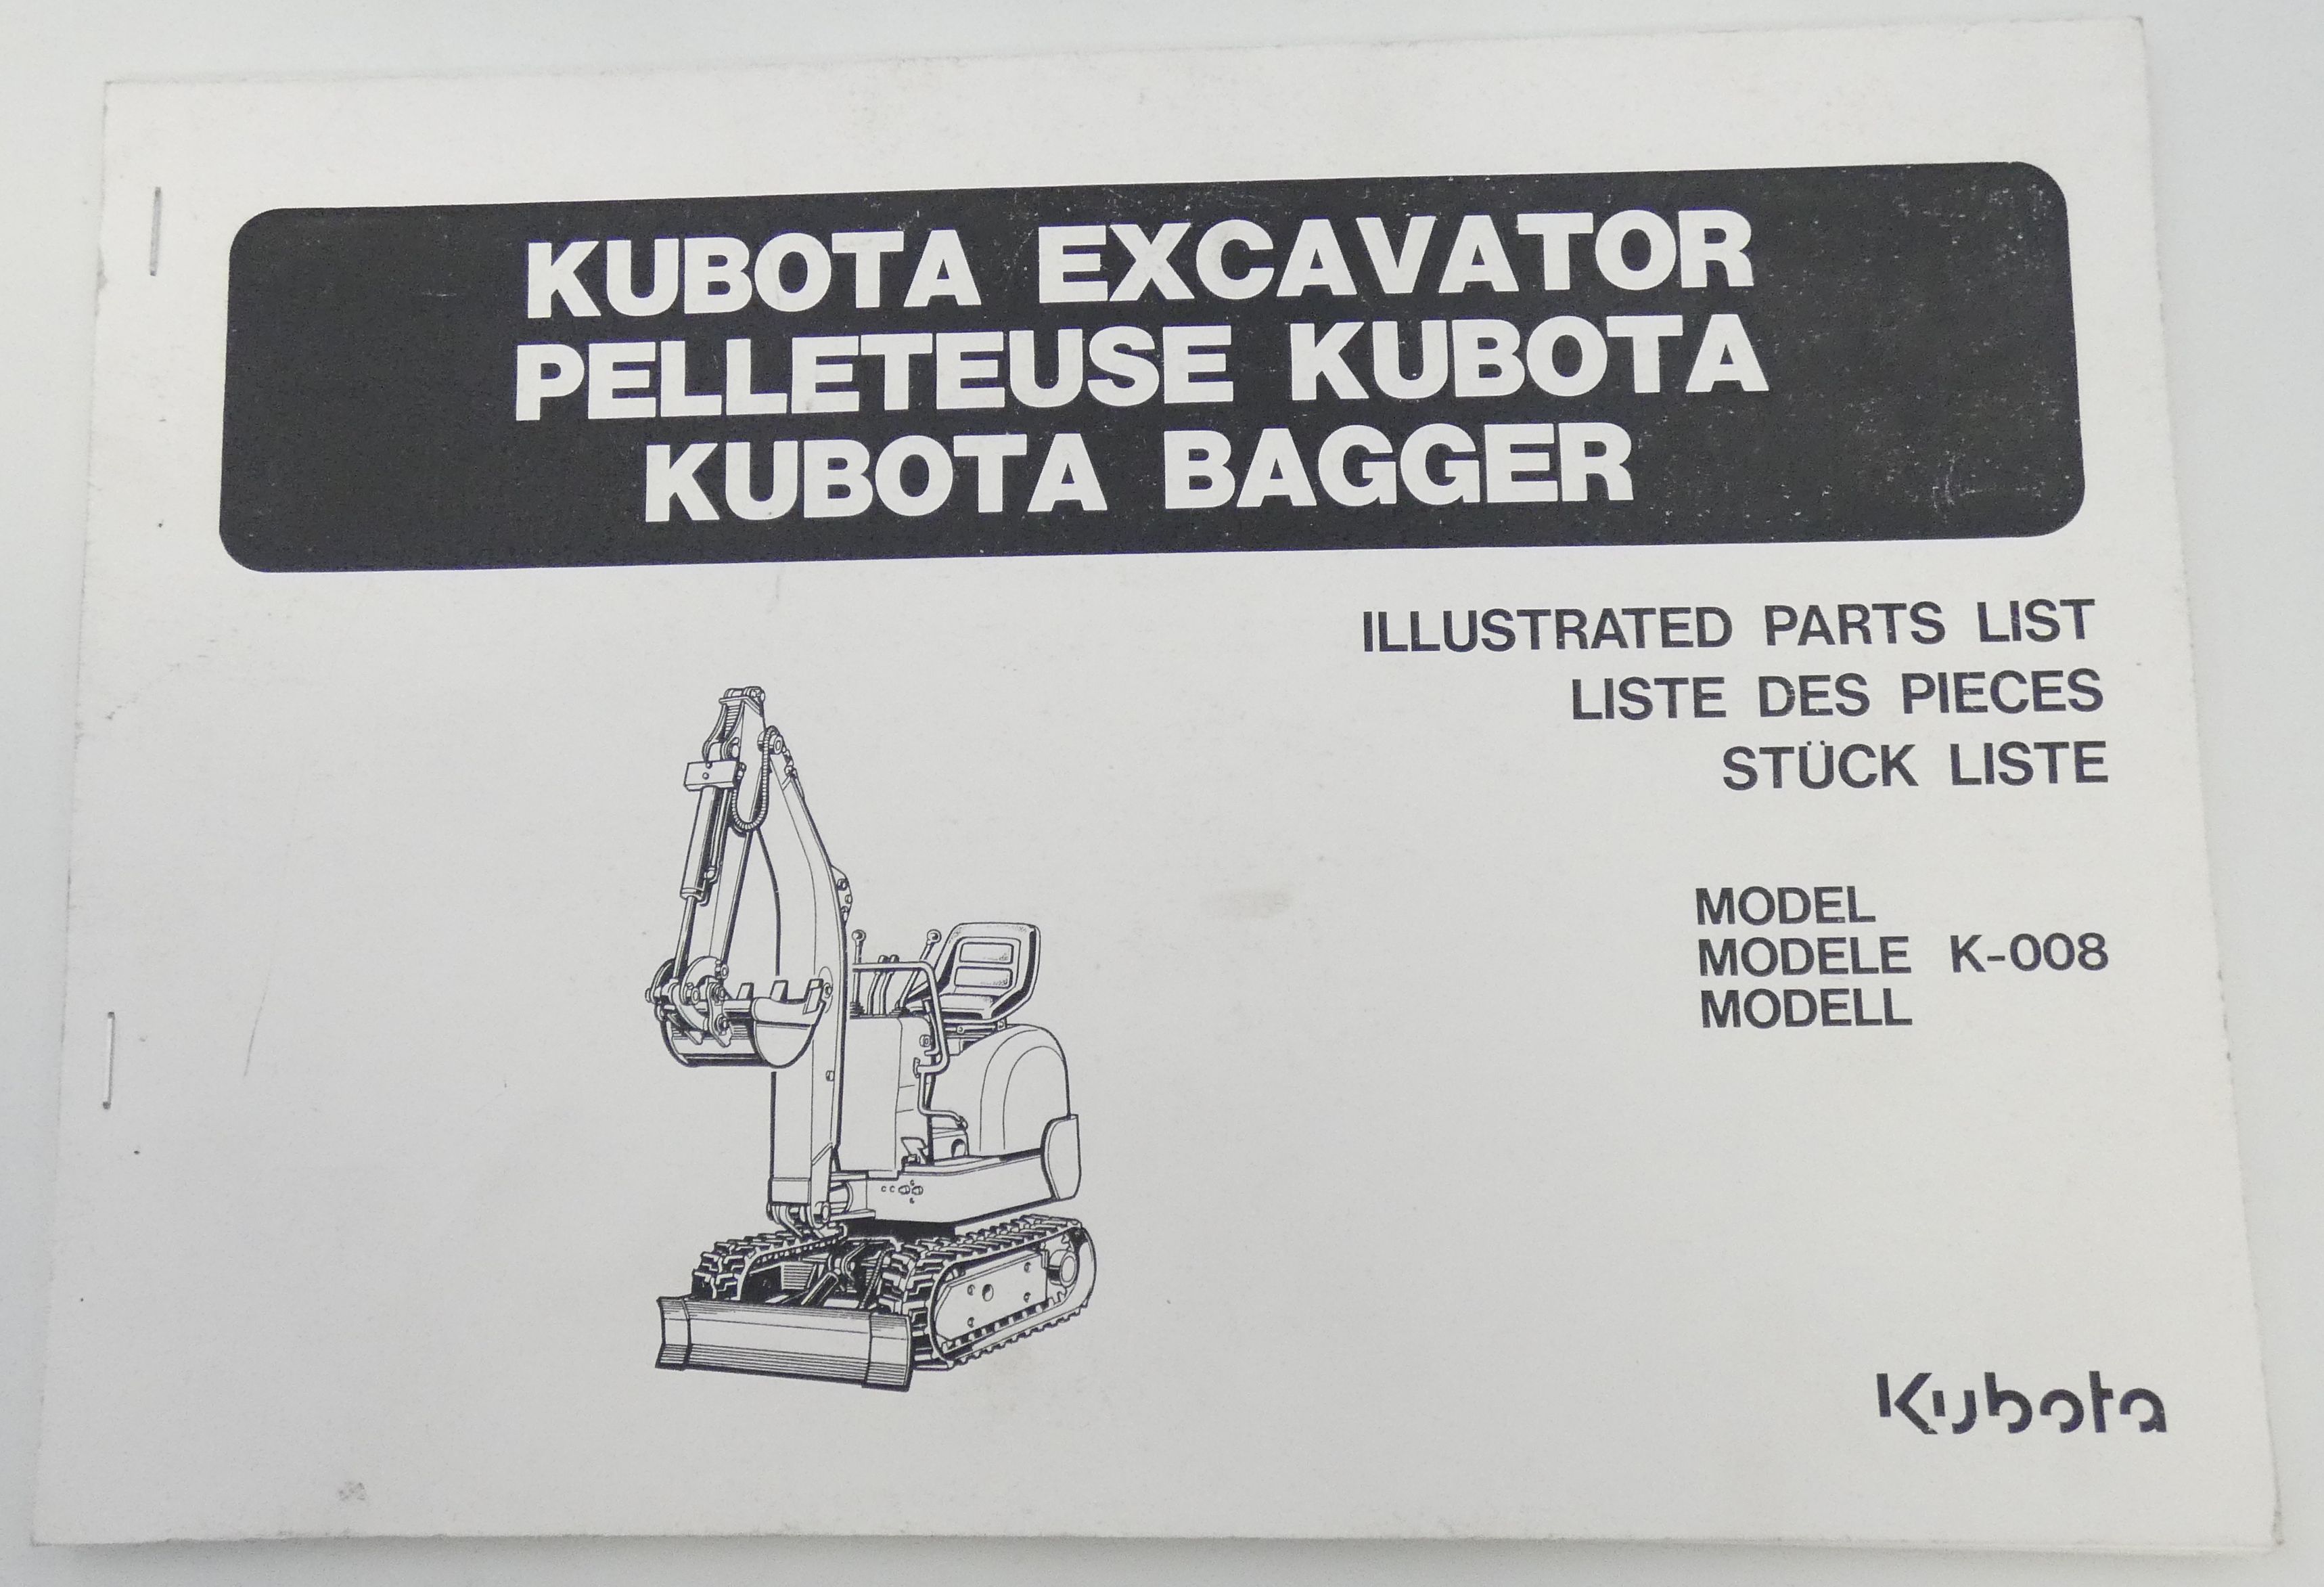 Kubota excavator model K-008 illustrated parts list